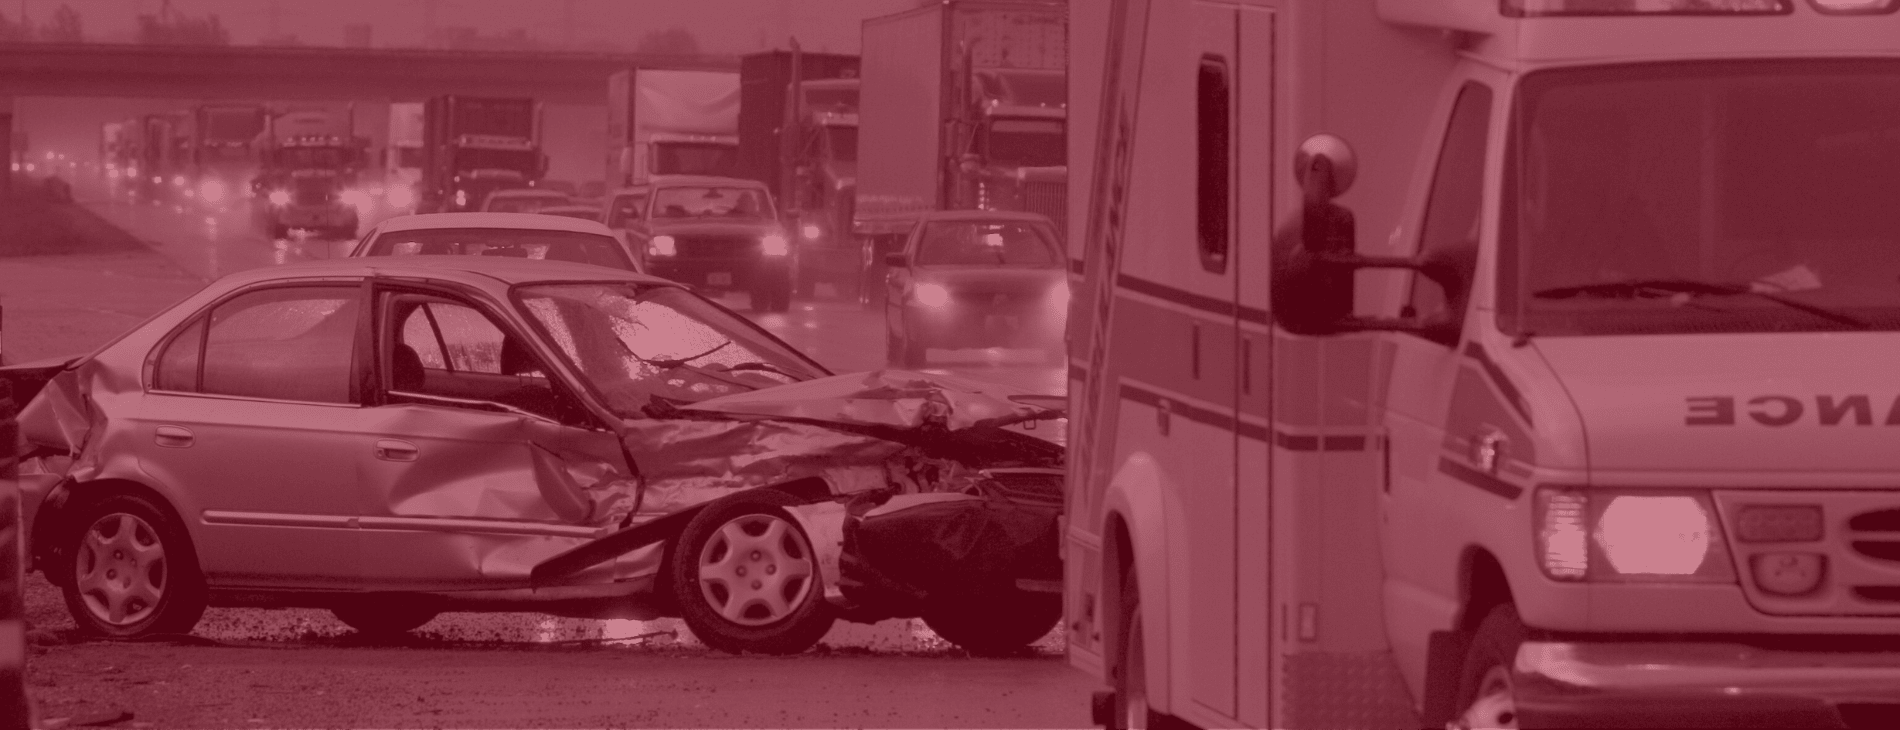 Encino car crash